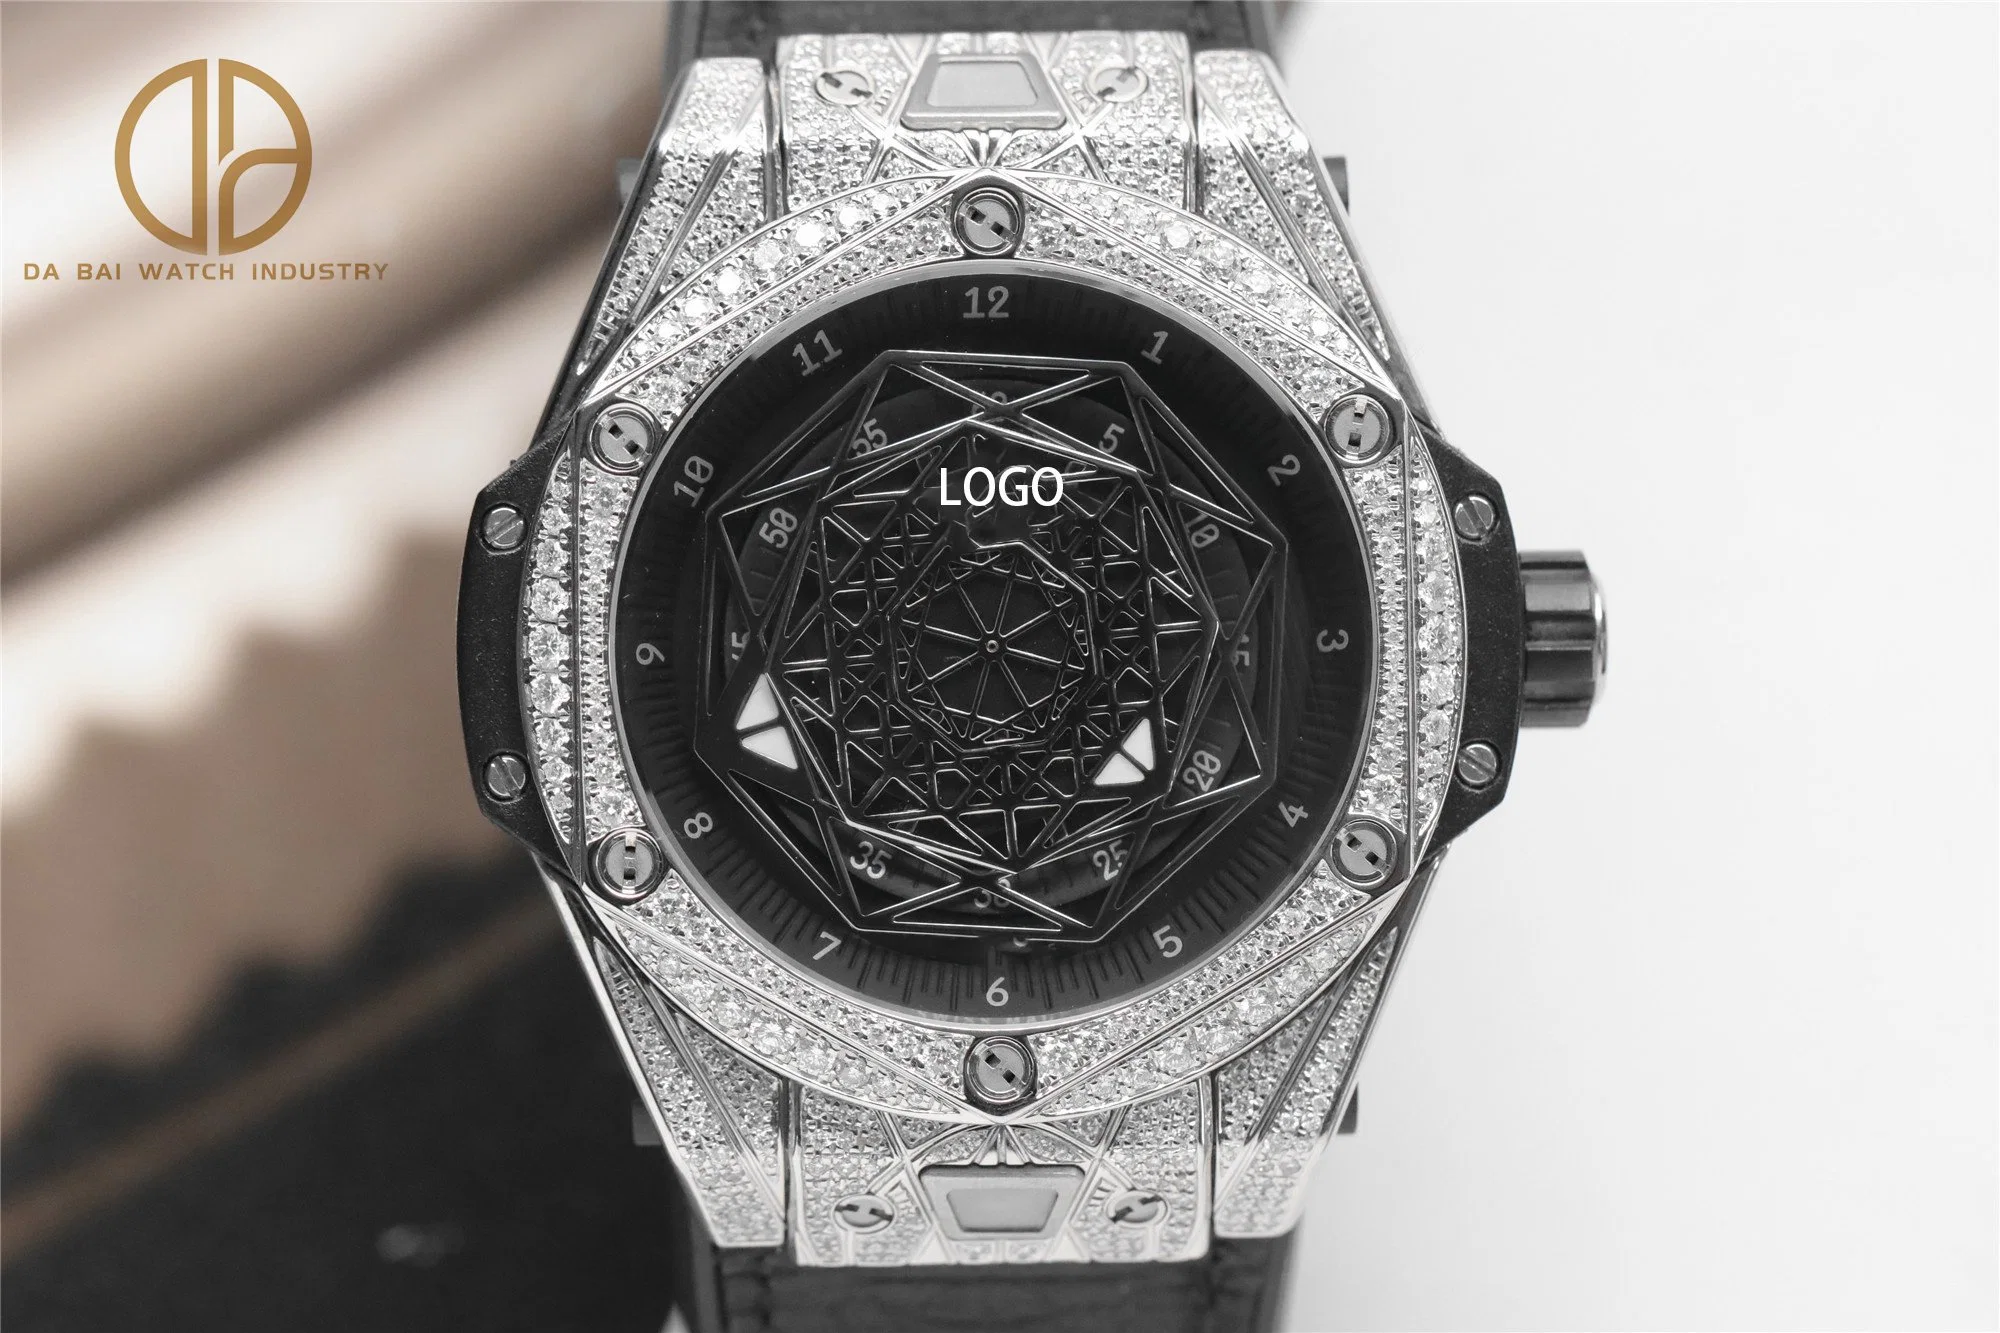 Super Clone Uhr 5A WWF HB Factory Diamond Inlaid Uhr Sport mechanische Herrenuhr, Luxus Titan Quick Detachable Uhr Armband Uhr